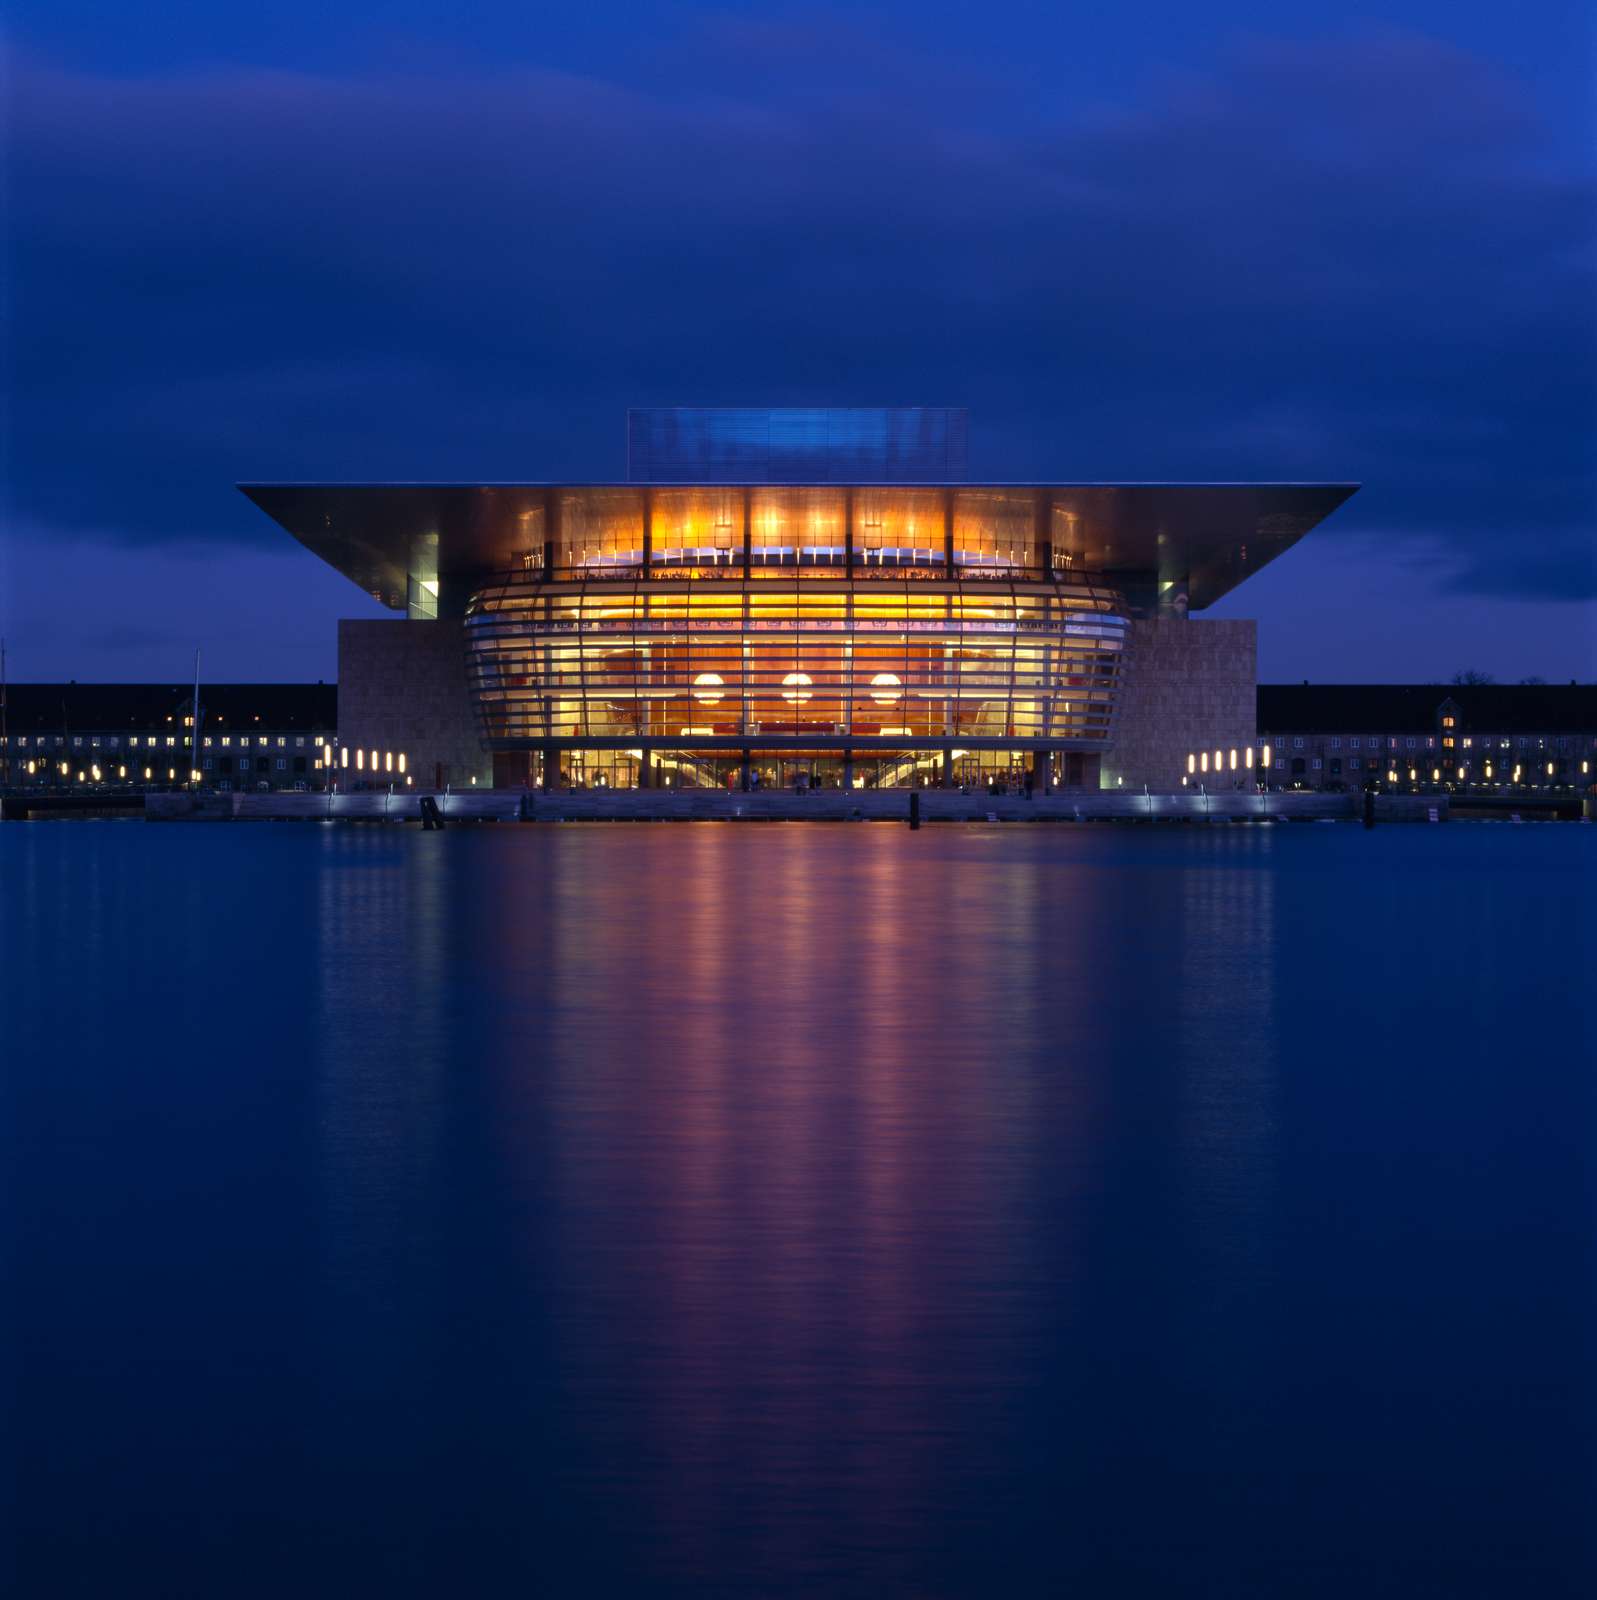 Copenhagen's Opera House